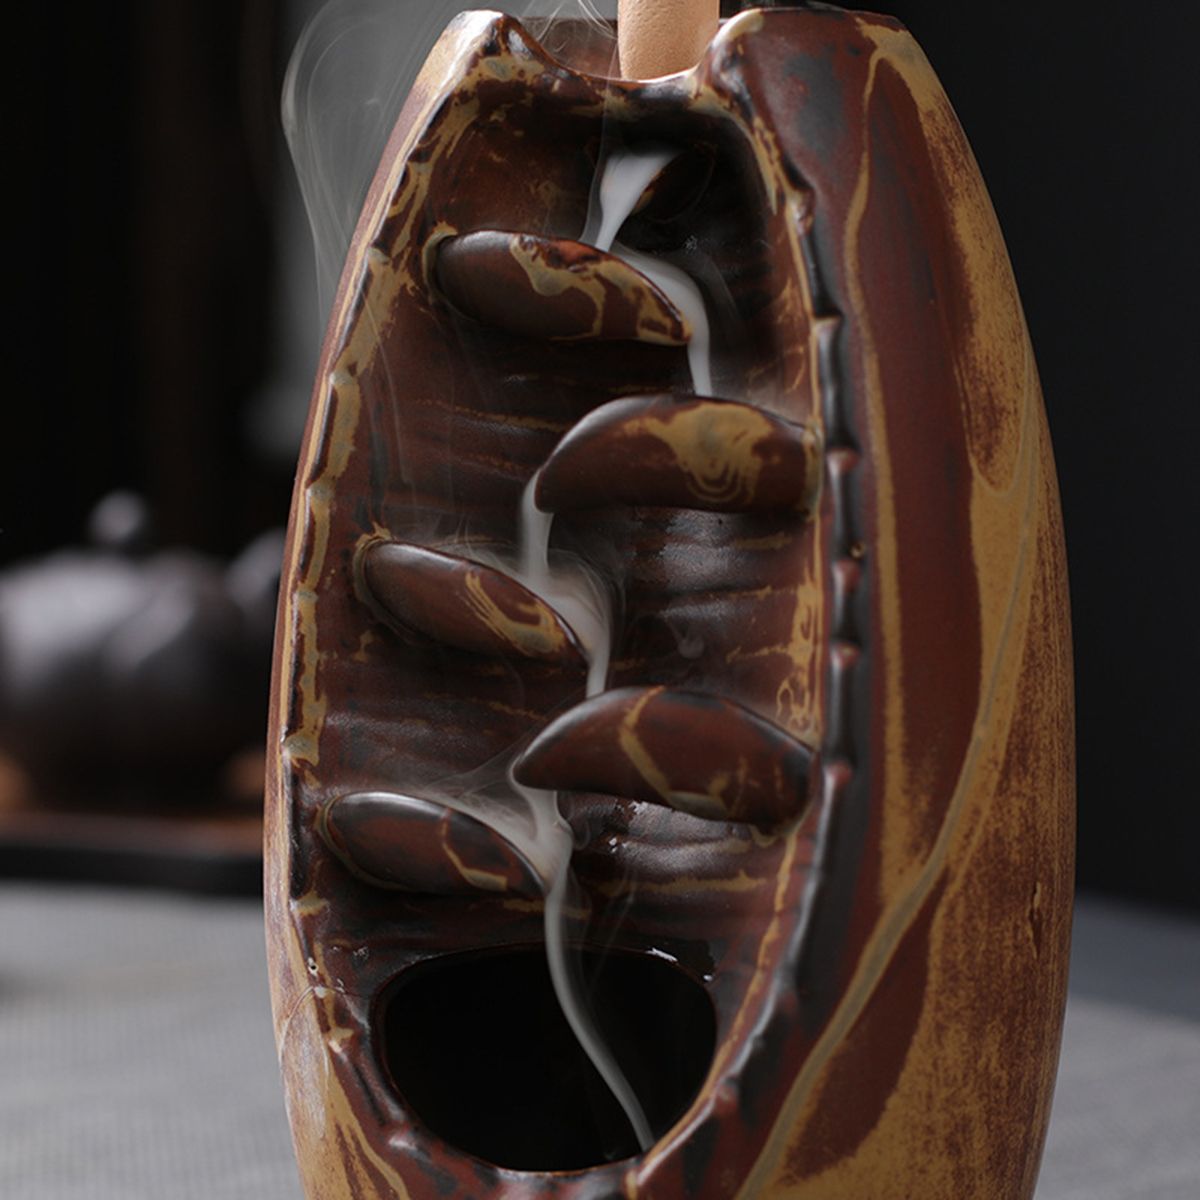 Porcelain-Backflow-Ceramic-Cone-Incense-Burner-Holder-Buddhist-Censer-1696186